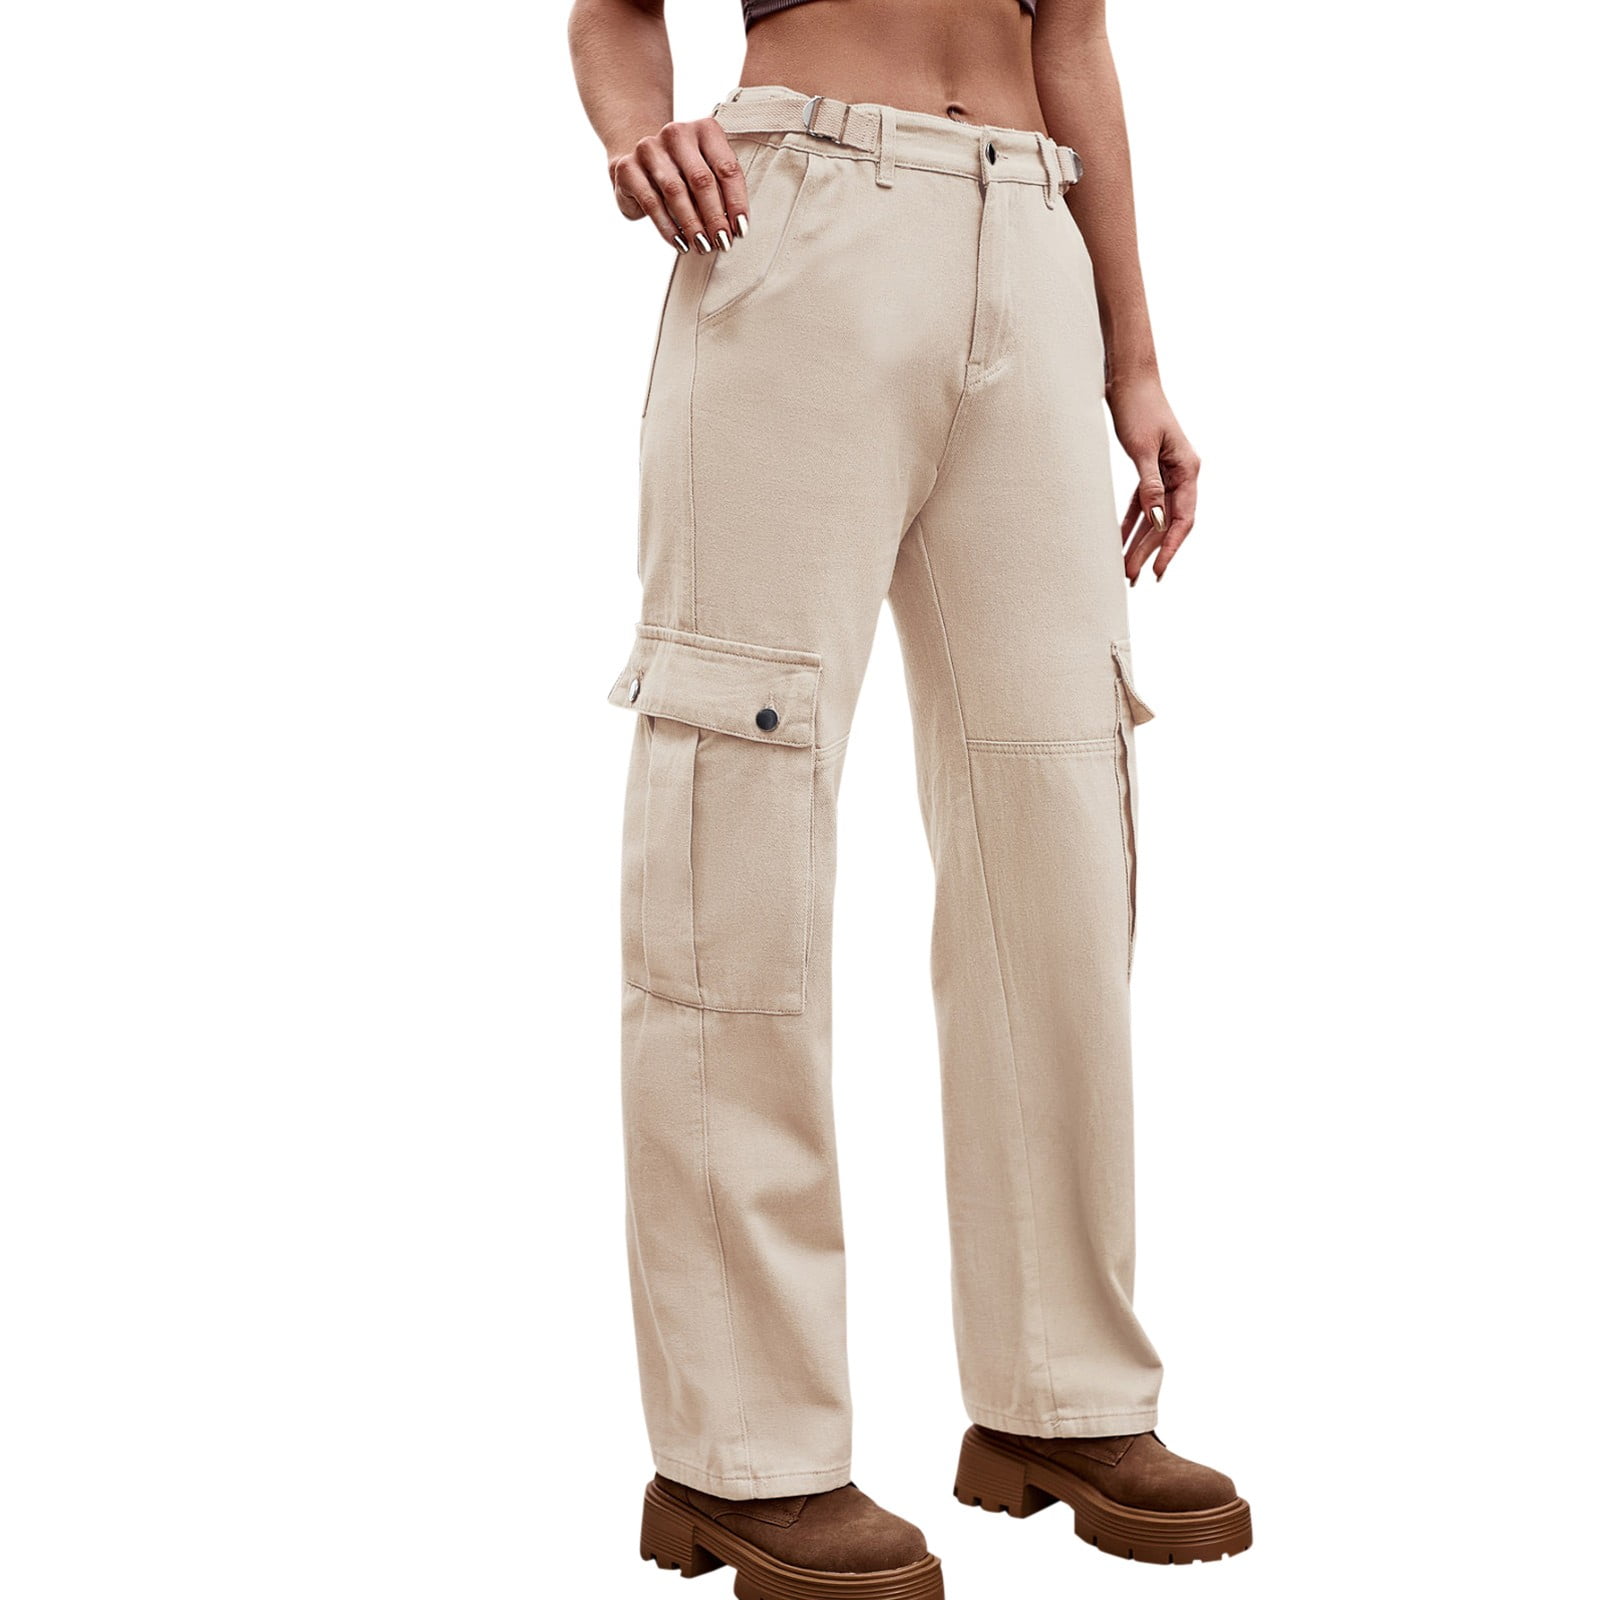 Khaki Wide Leg Pants Unisex Large Pocket Cargo Pants Solid Color